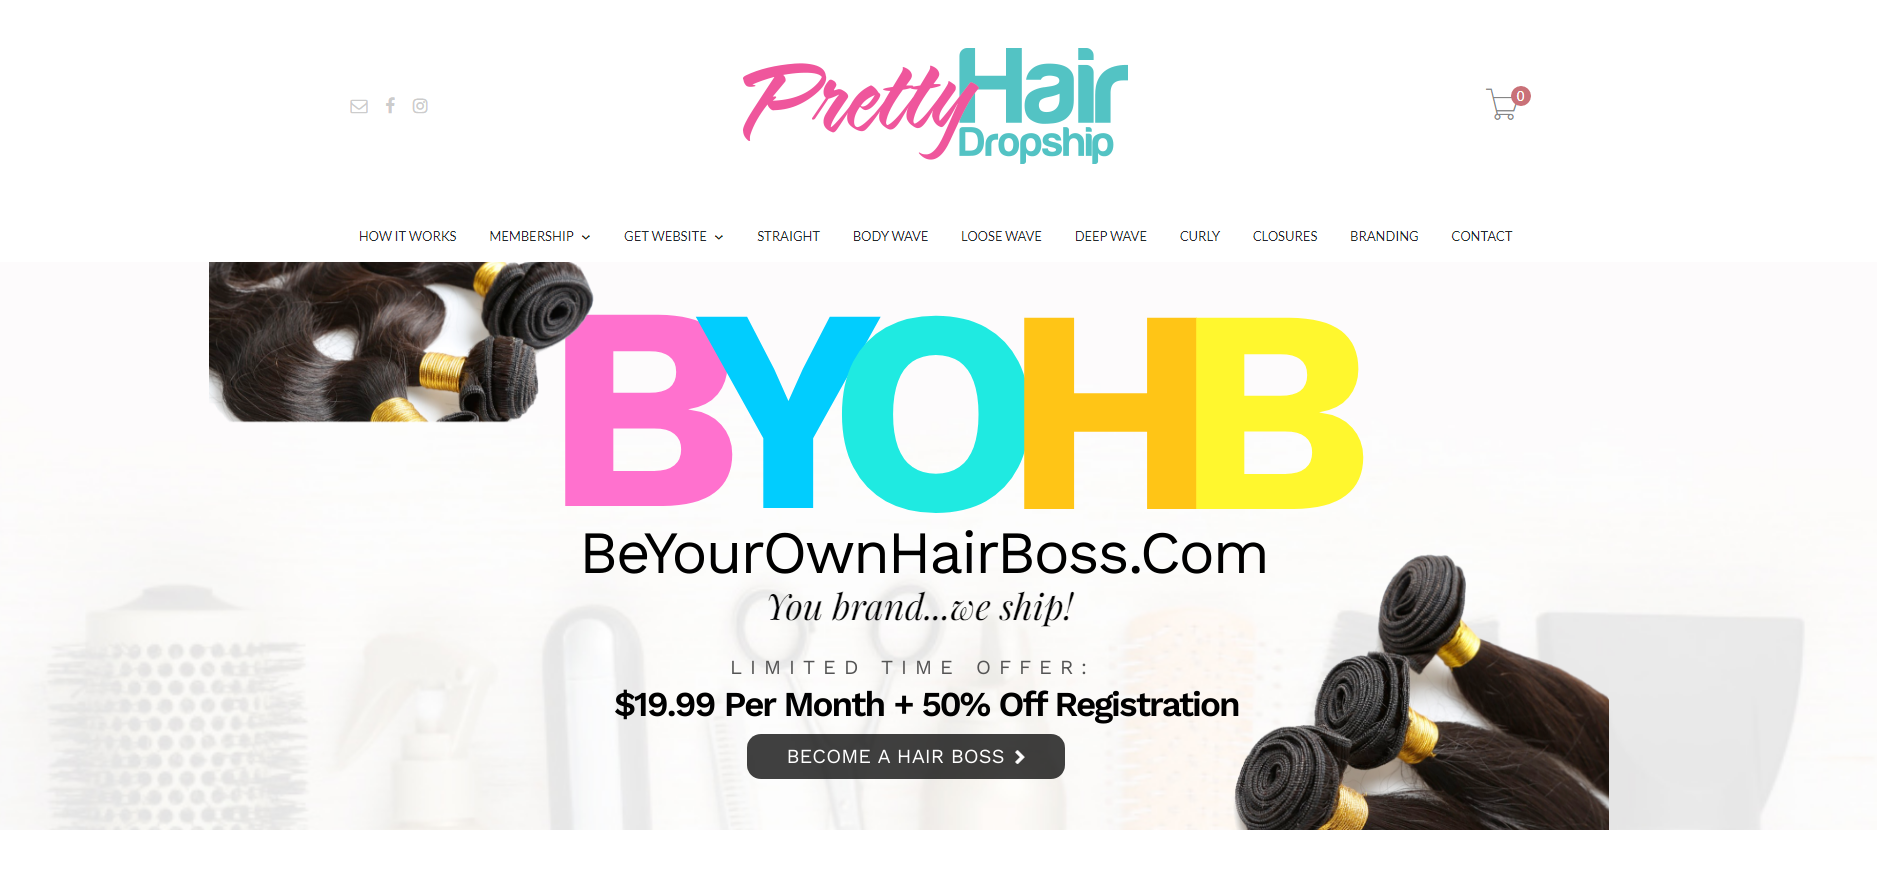 8 Best Hair Salon Dropshipping Suppliers 7: Pretty Hair Dropship